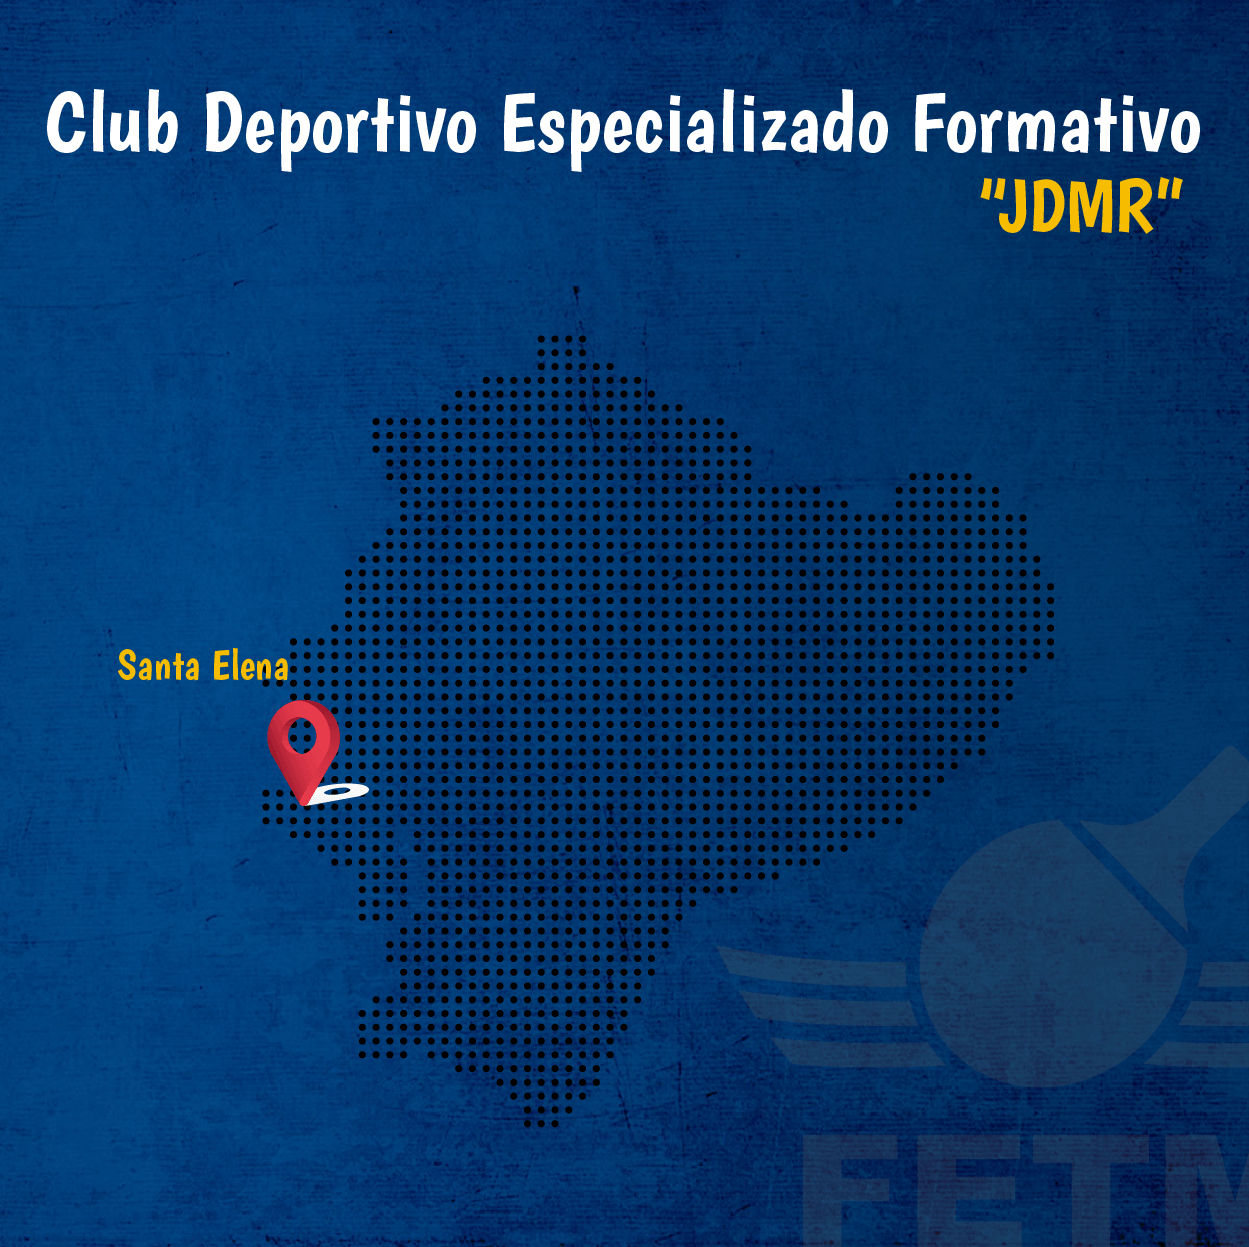 CLUB DEPORTIVO FORMATIVO ESPECIALIZADO DE TENIS DE MESA “JDMR”